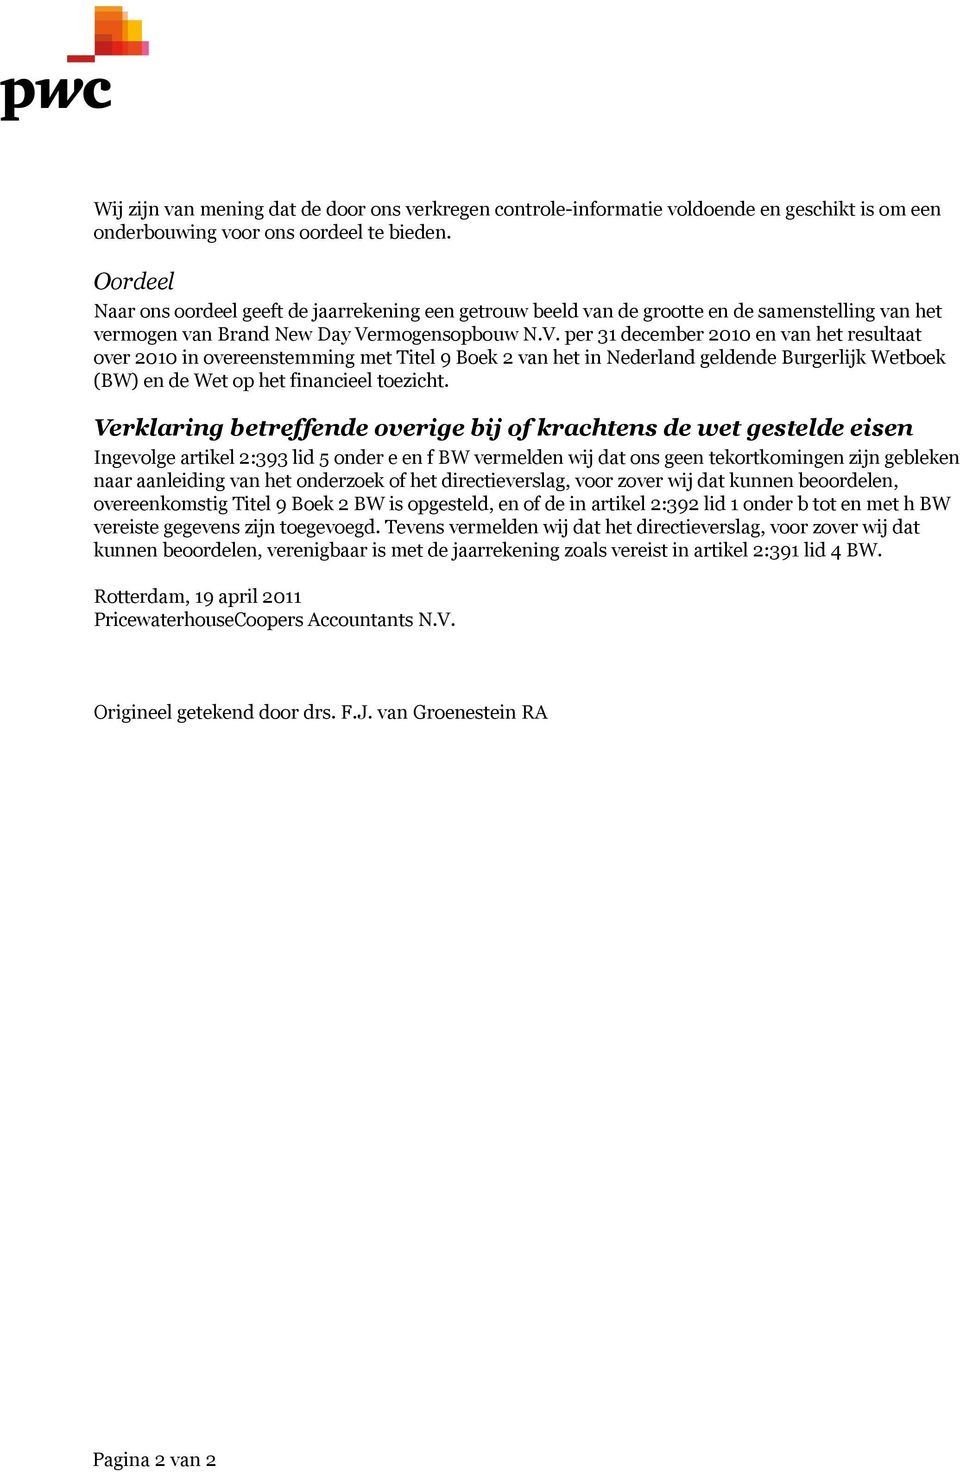 rmogensopbouw N.V. per 31 december 2010 en van het resultaat over 2010 in overeenstemming met Titel 9 Boek 2 van het in Nederland geldende Burgerlijk Wetboek (BW) en de Wet op het financieel toezicht.